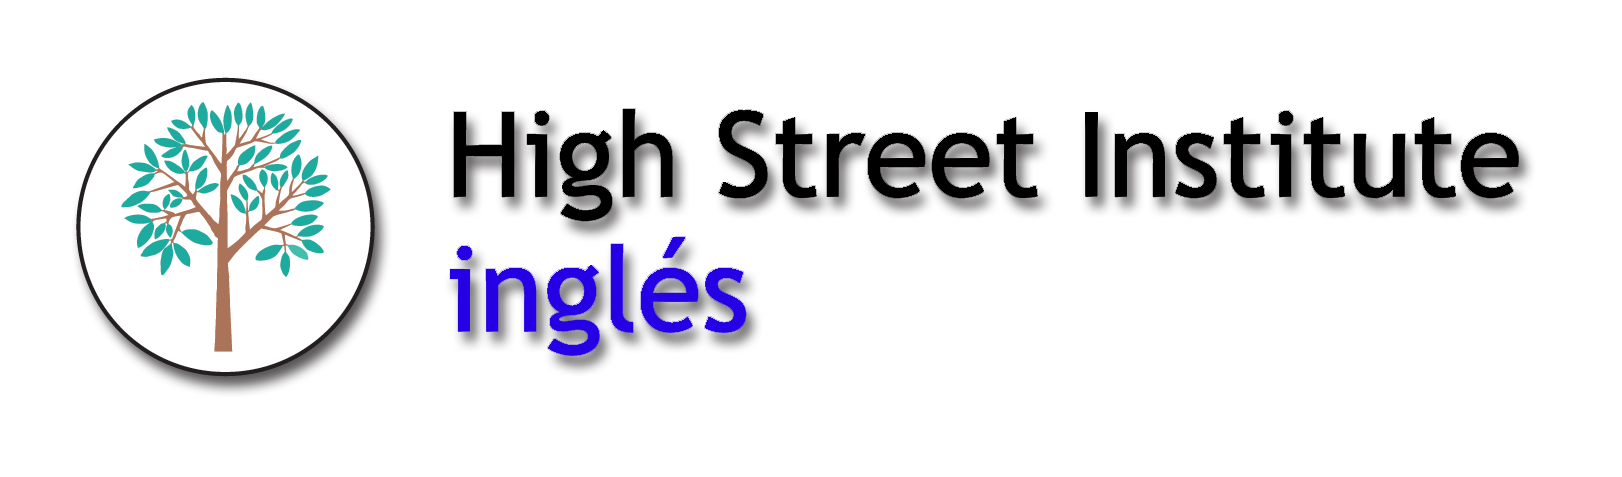 High Street Institute